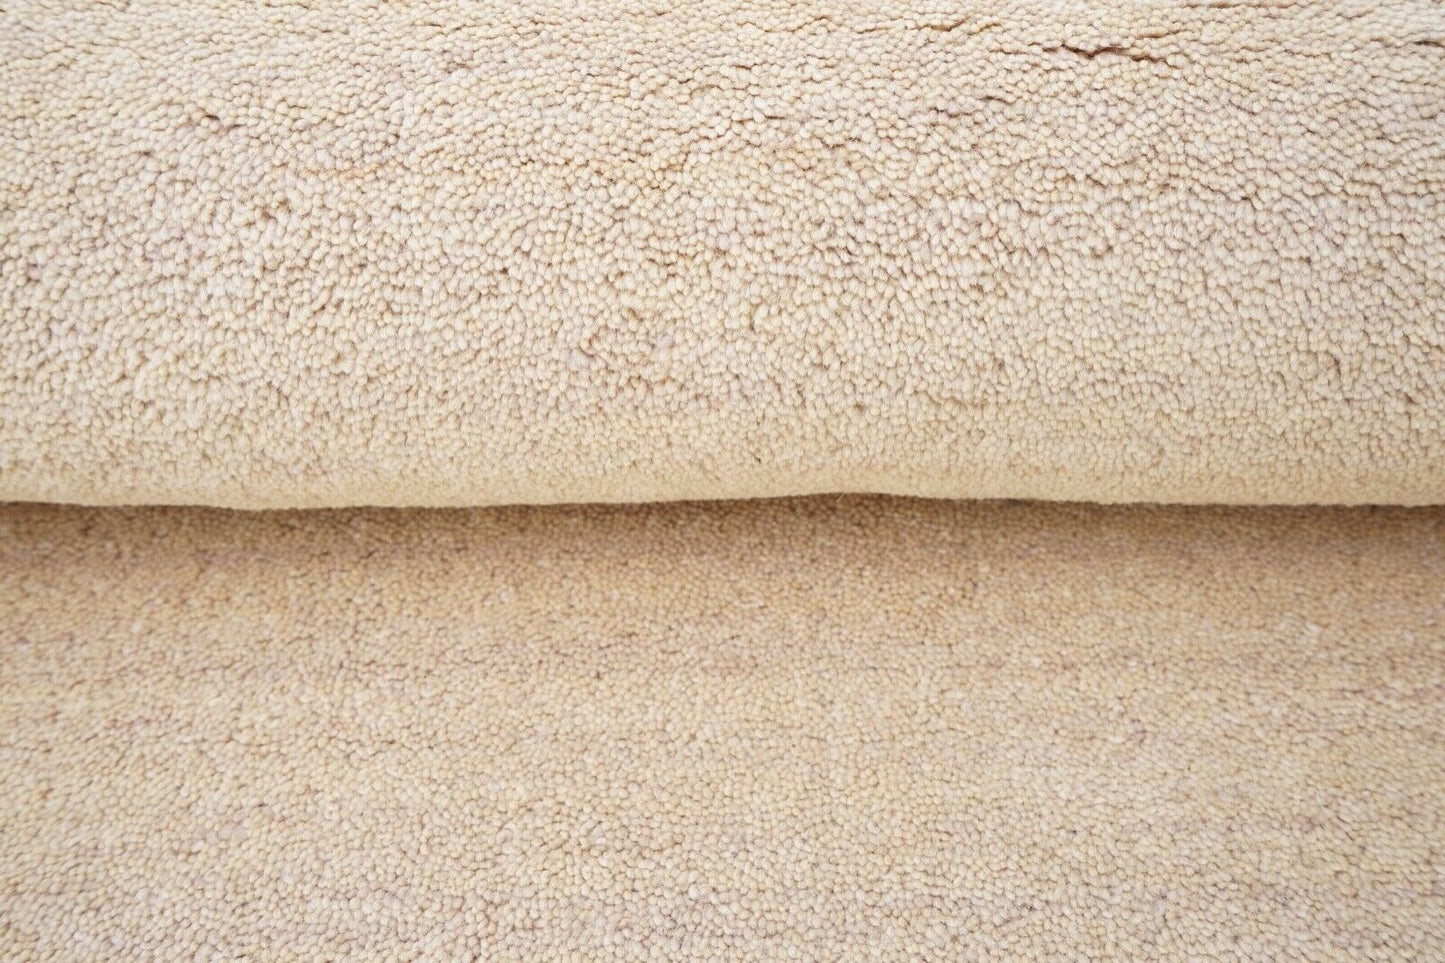 140X200 cm Teppich 100% Wolle Beige Braun Orient Handgetuftet HT611